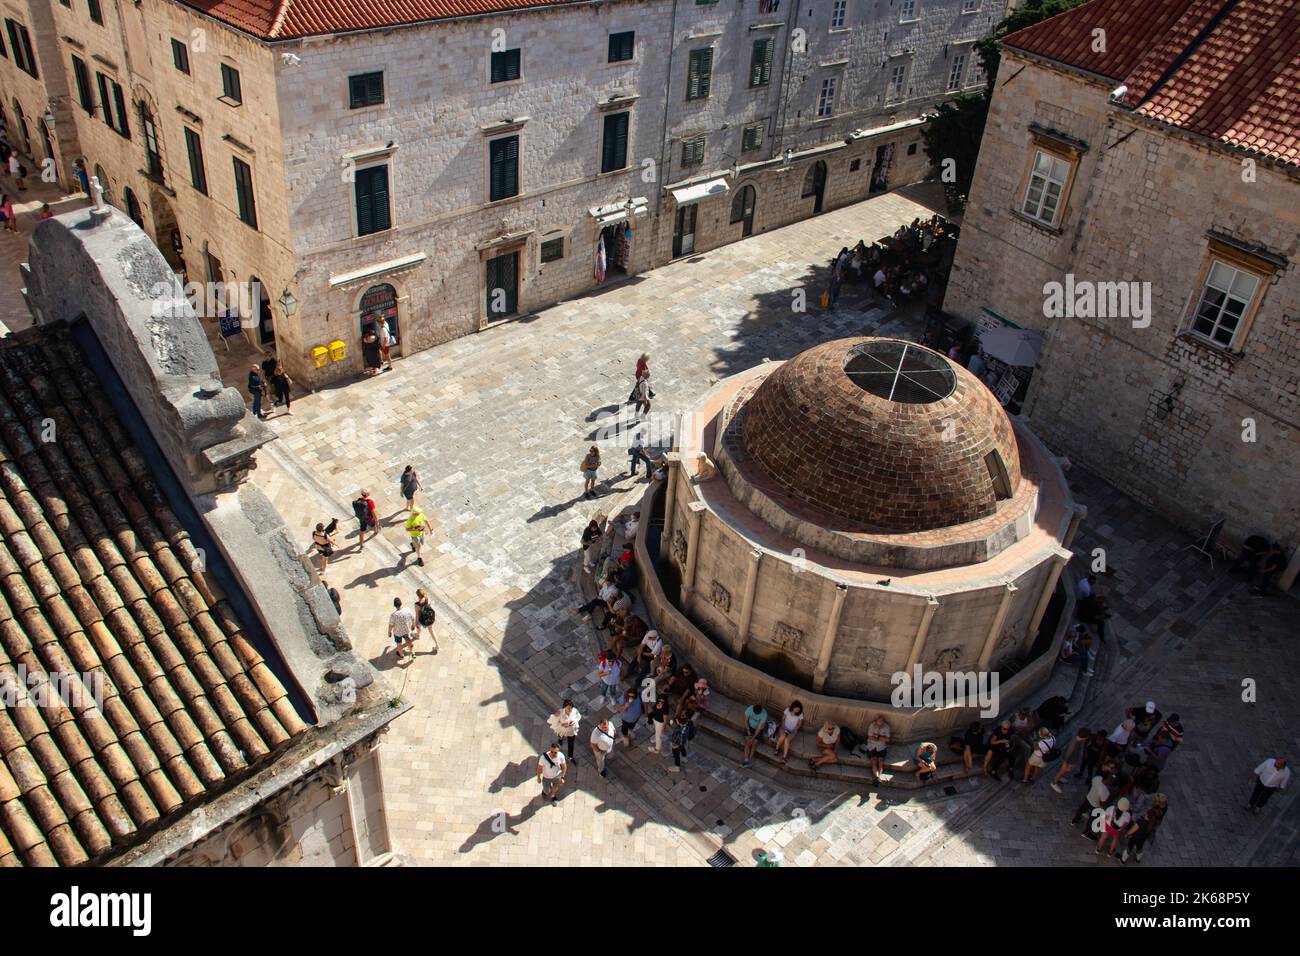 Dubrovnik Altstadt und Festung, Stadt in Kroatien (Hrvatska), Ort, wo TV-Show Game of Thrones aufgenommen wurde Stockfoto